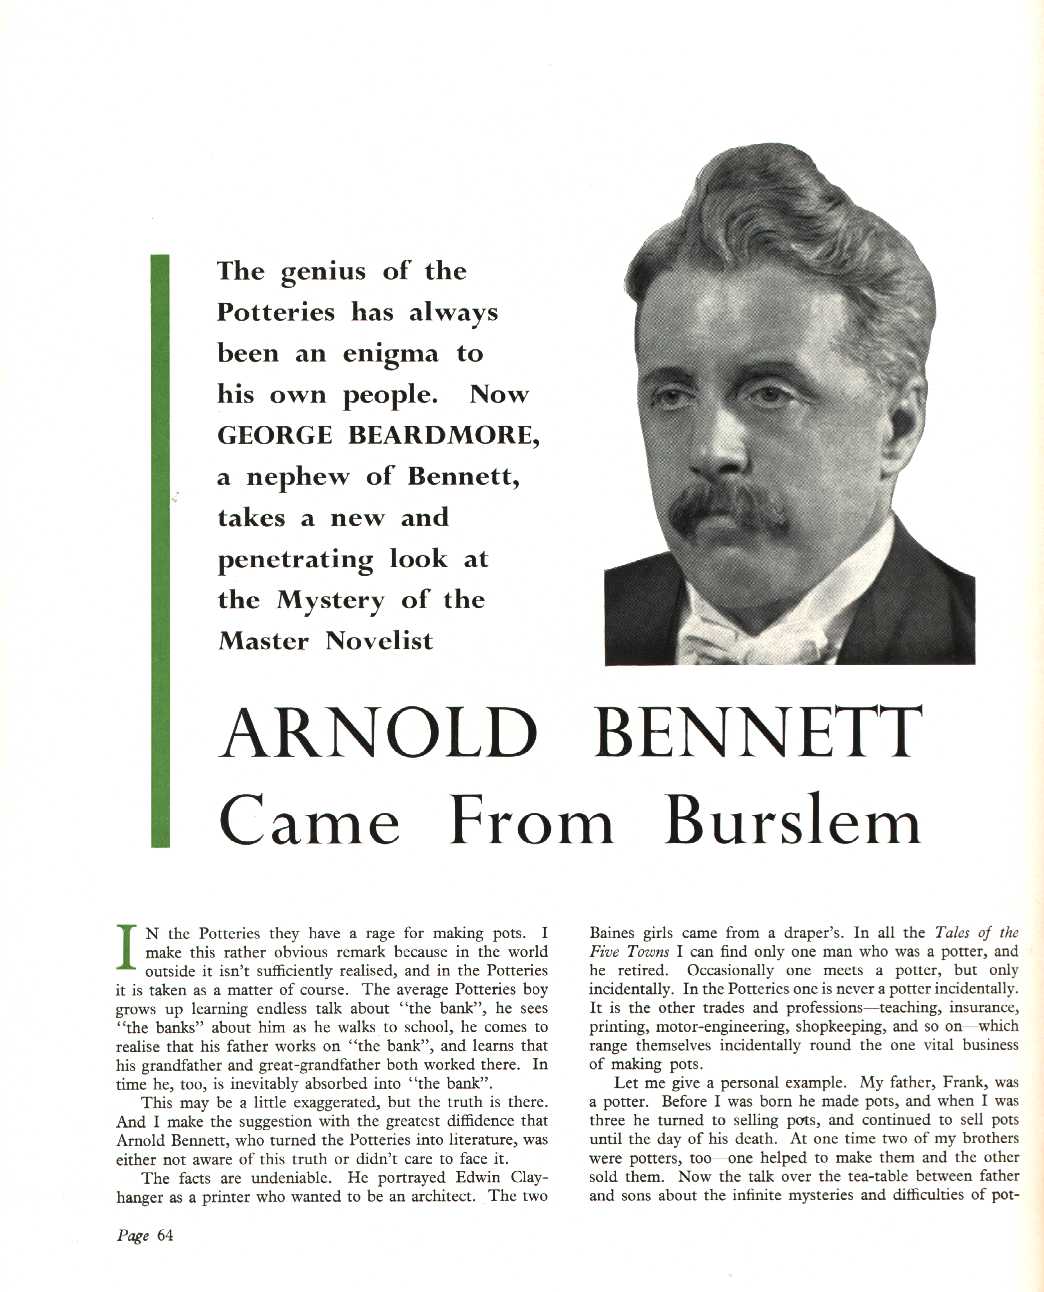 Arnold Bennett came from Burslem" article by Bennett's nephew